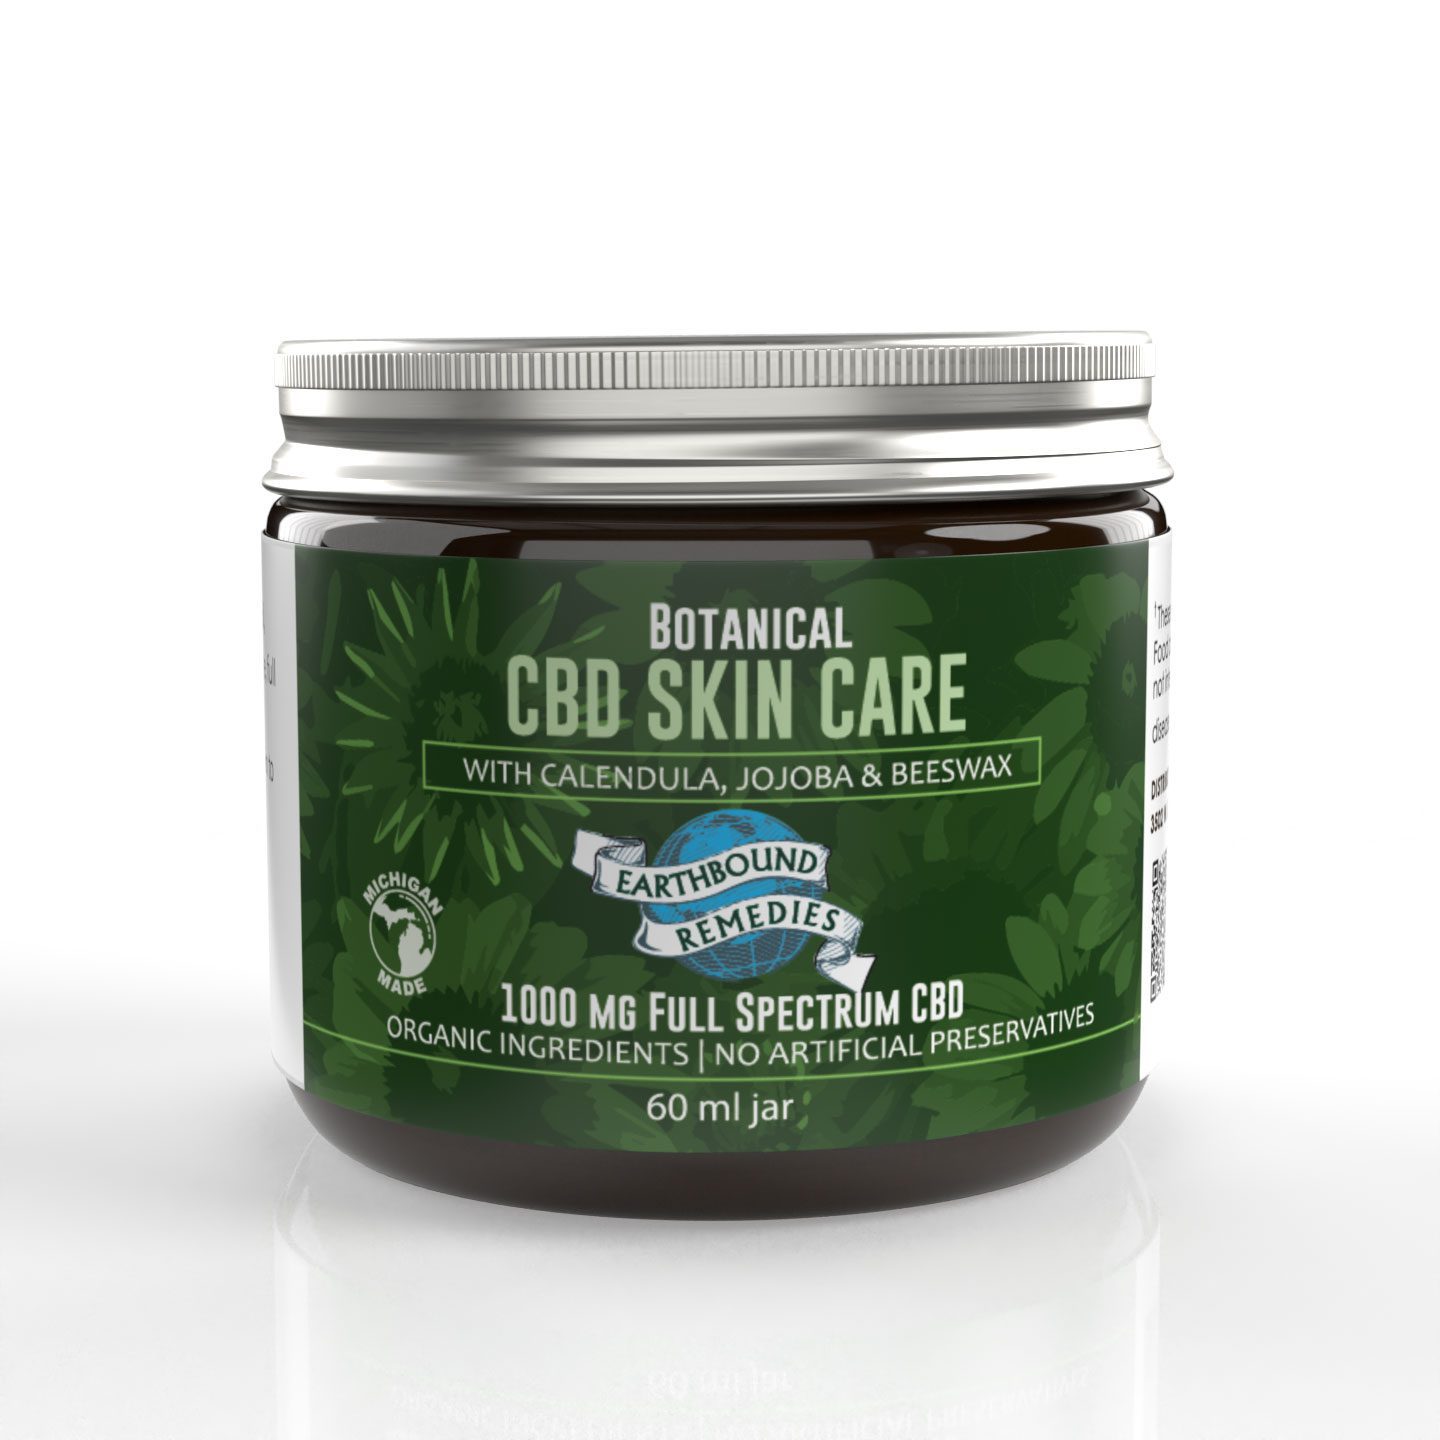 Kuumba Made St. John's Wort Botanically Infused Body Care Oil • Rejuvent  Skincare